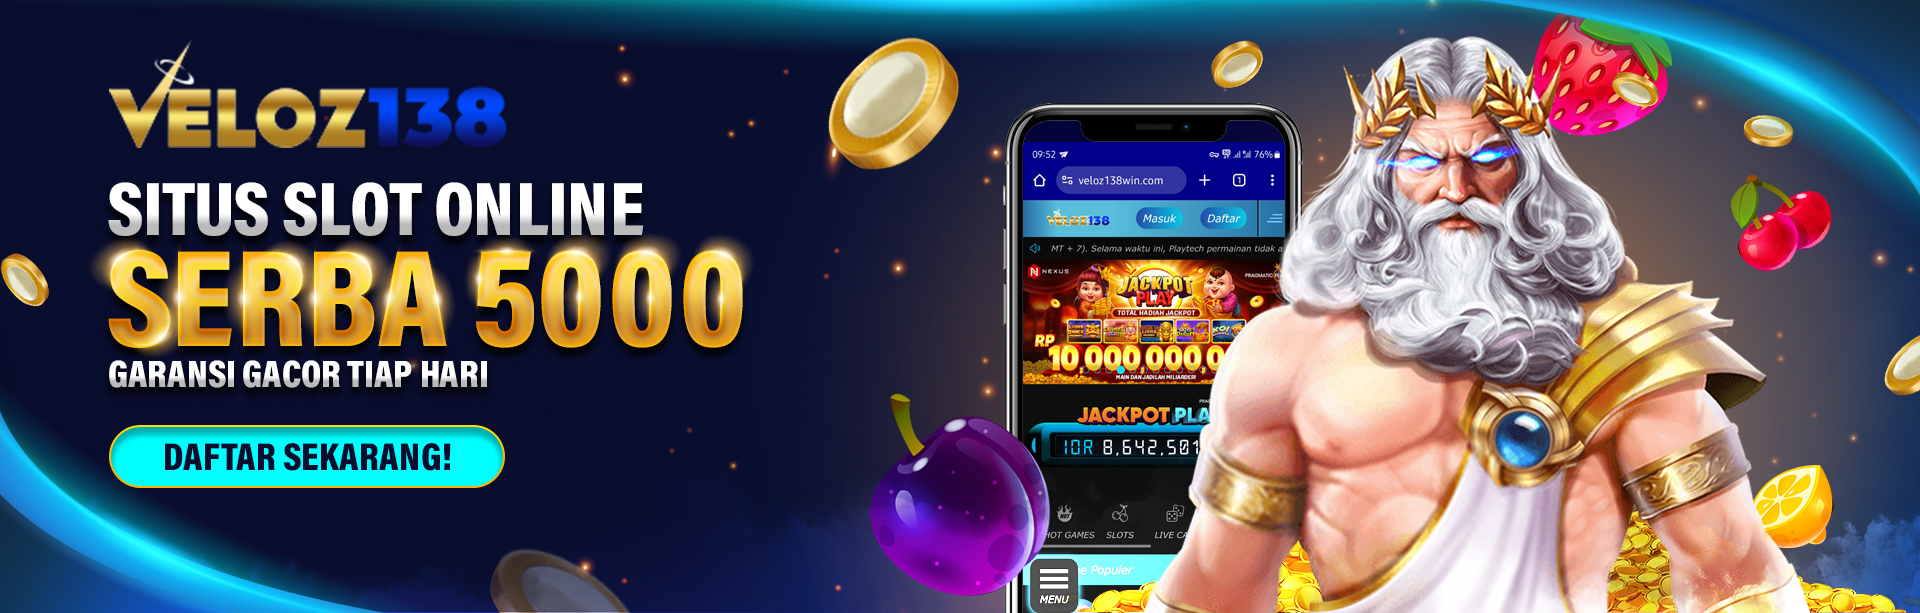  Veloz138 - Situs Slot Online Serba 5000 Garansi Gacor Tiap Hari!